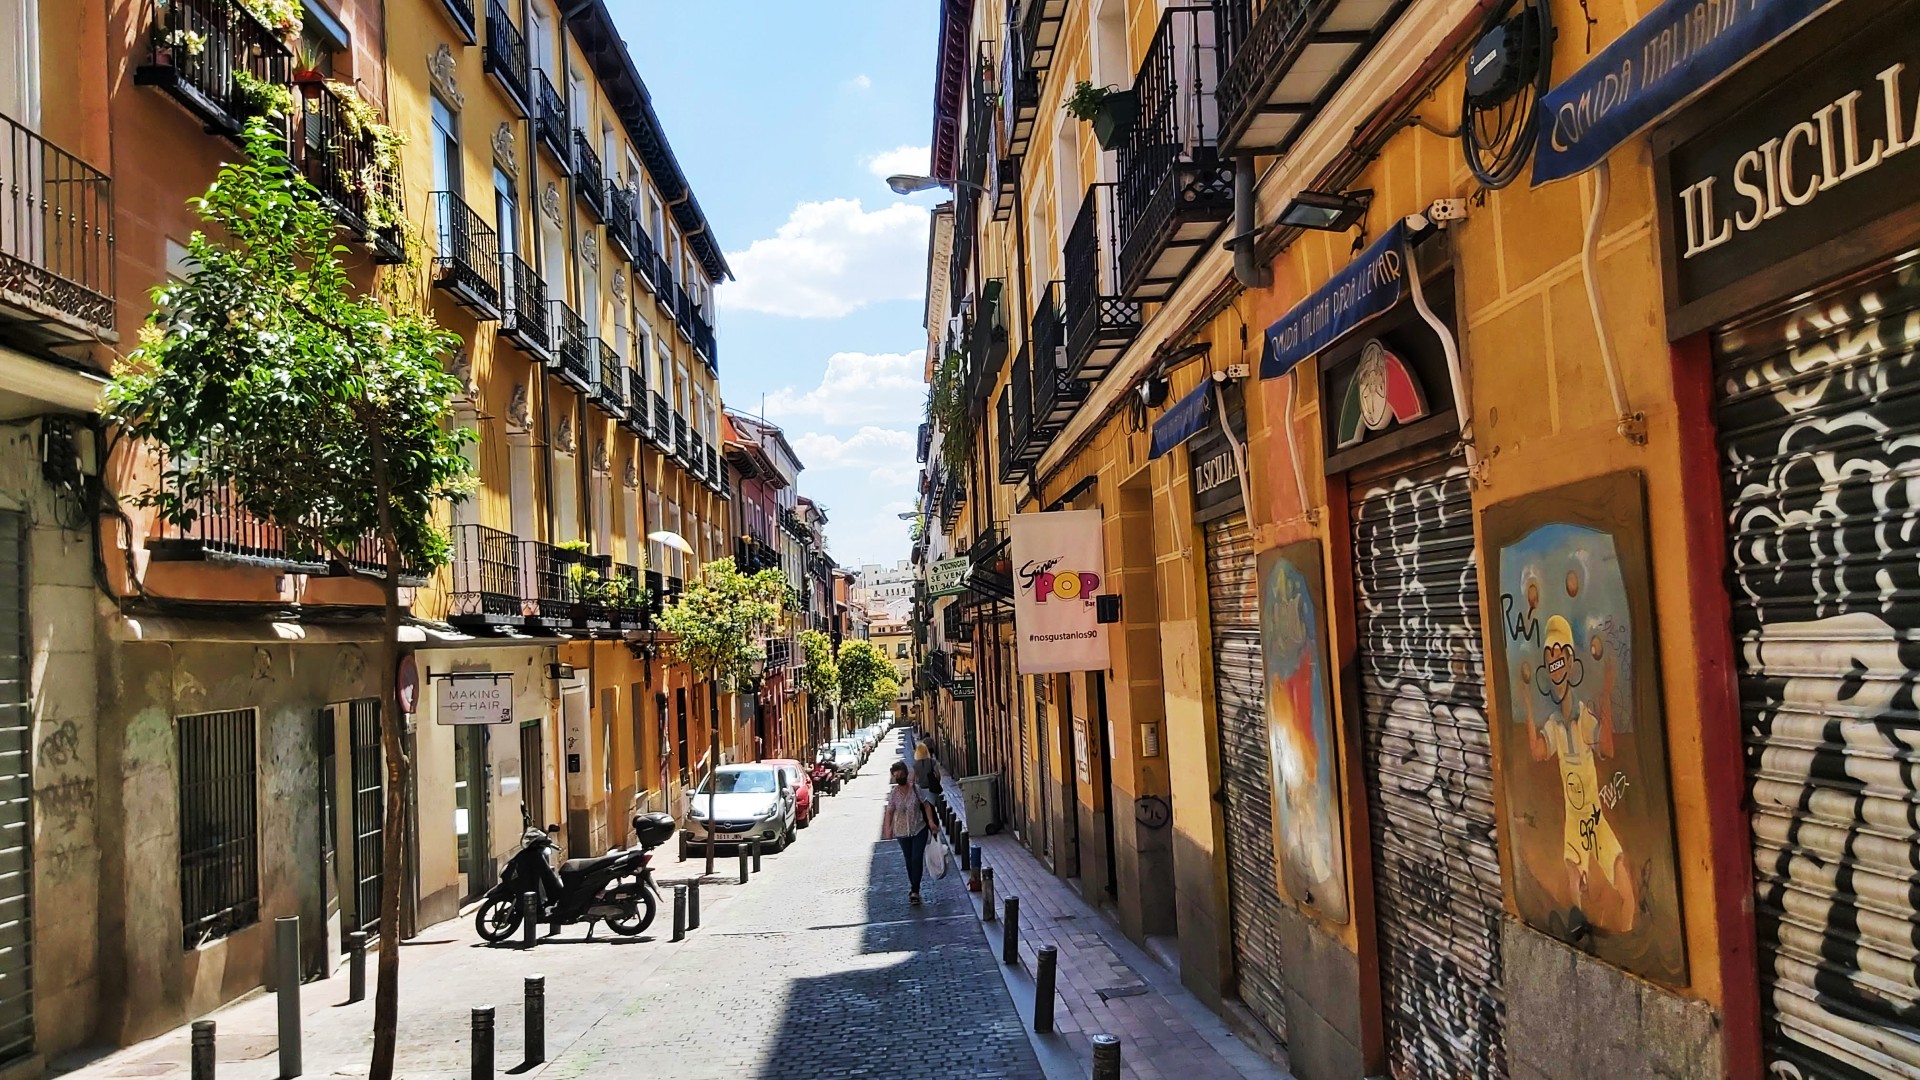 Situada en el extremo noroeste del centro de Madrid, Malasaña ha sido durante décadas el barrio alternativo y de vida nocturna de la ciudad.